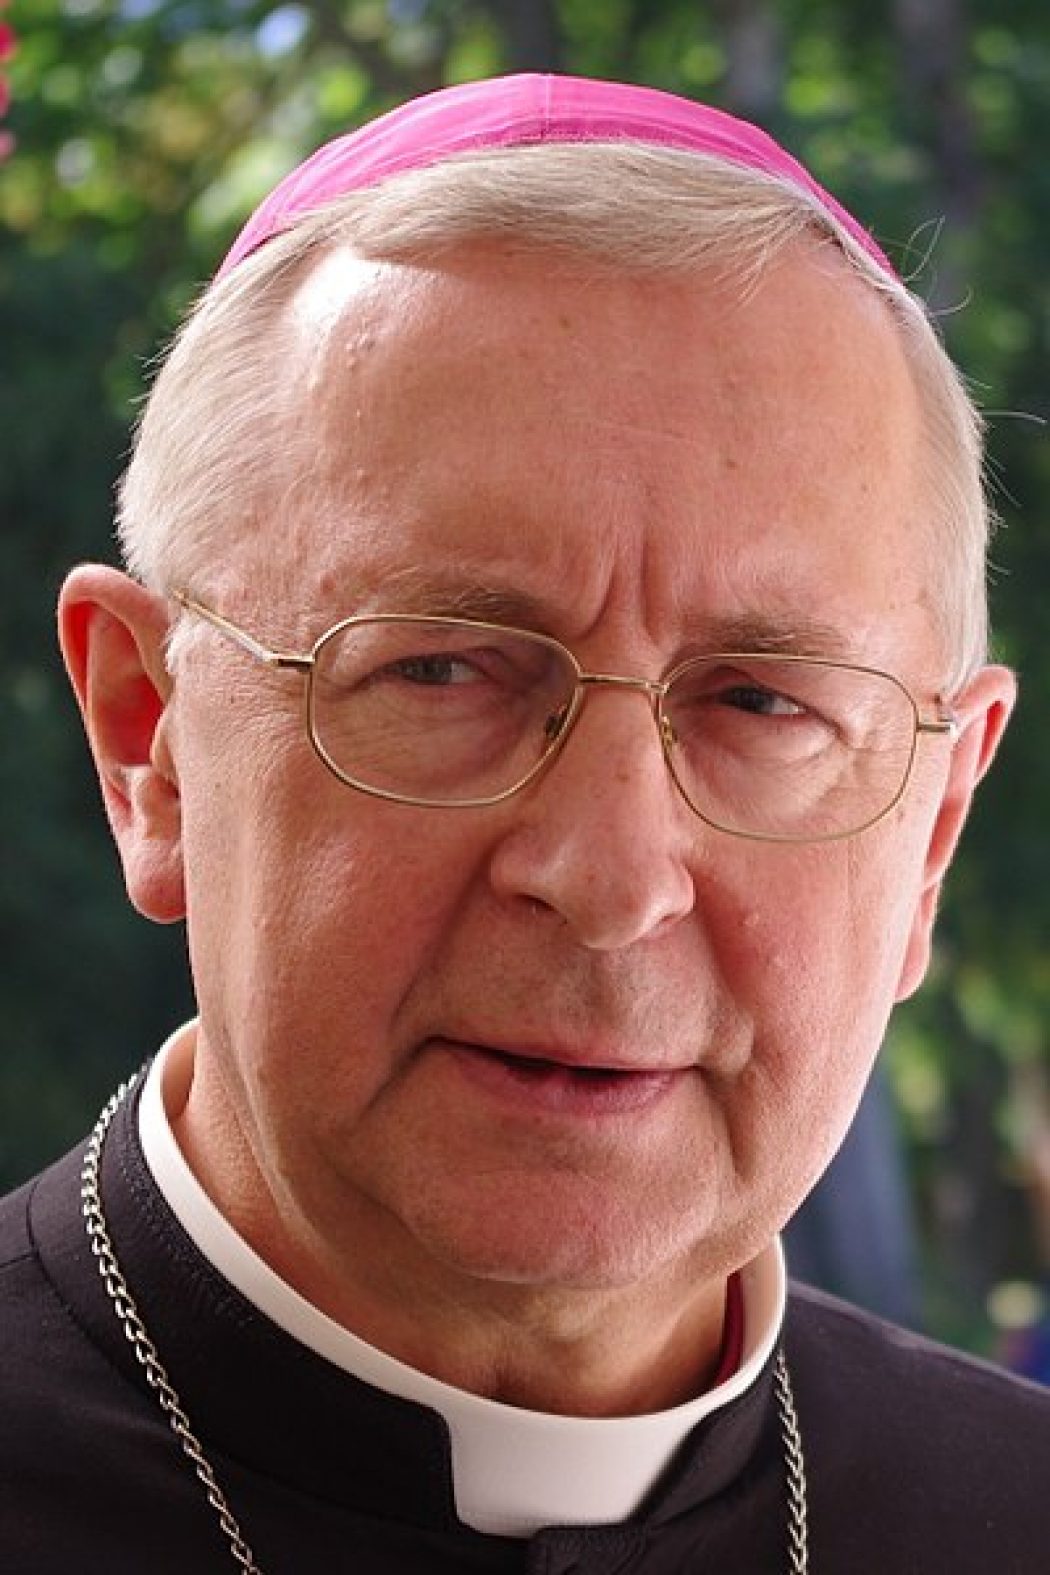 Les évêques polonais s’inquiètent pour l’unité dans la foi